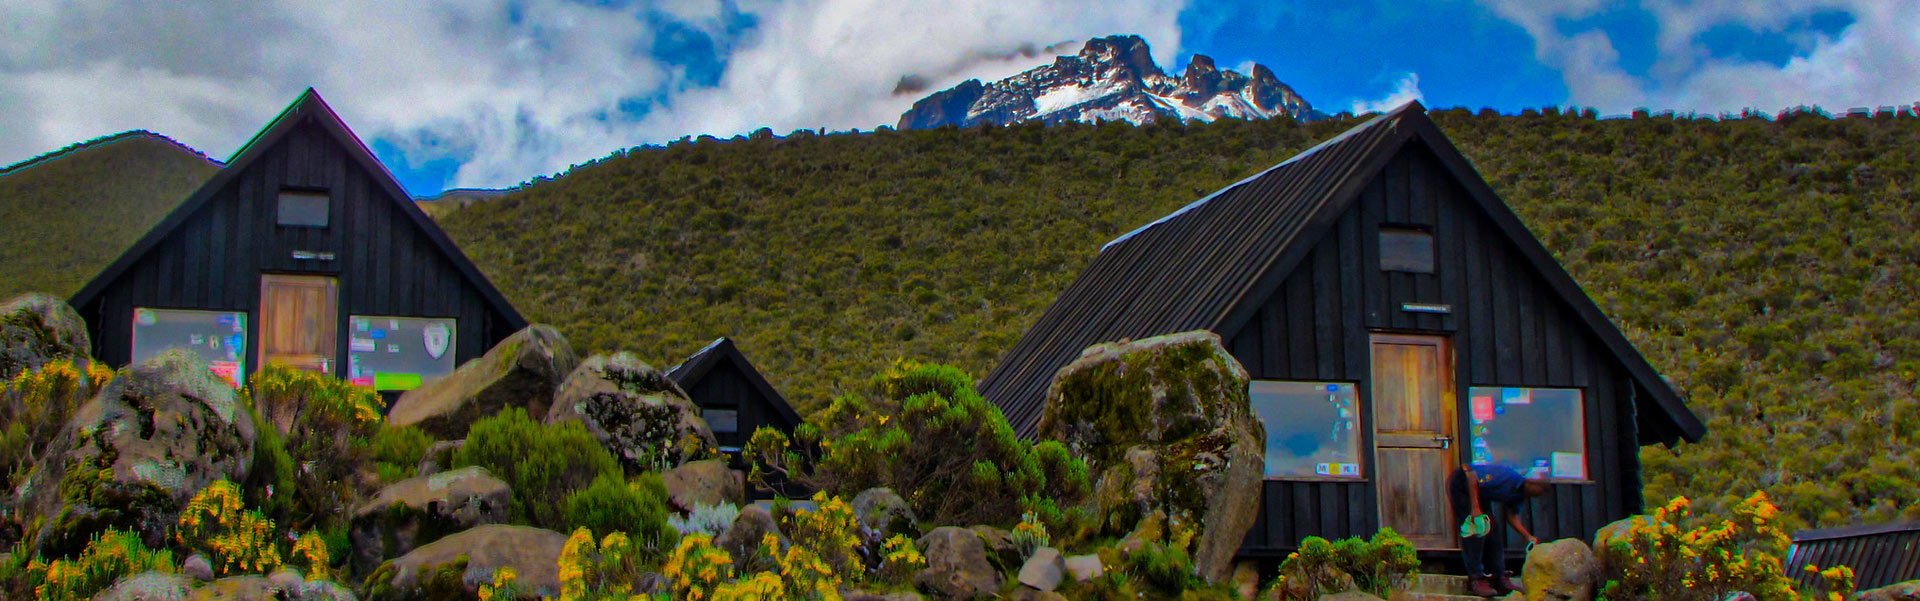 Marangu Huts on Mount Kilimanjaro